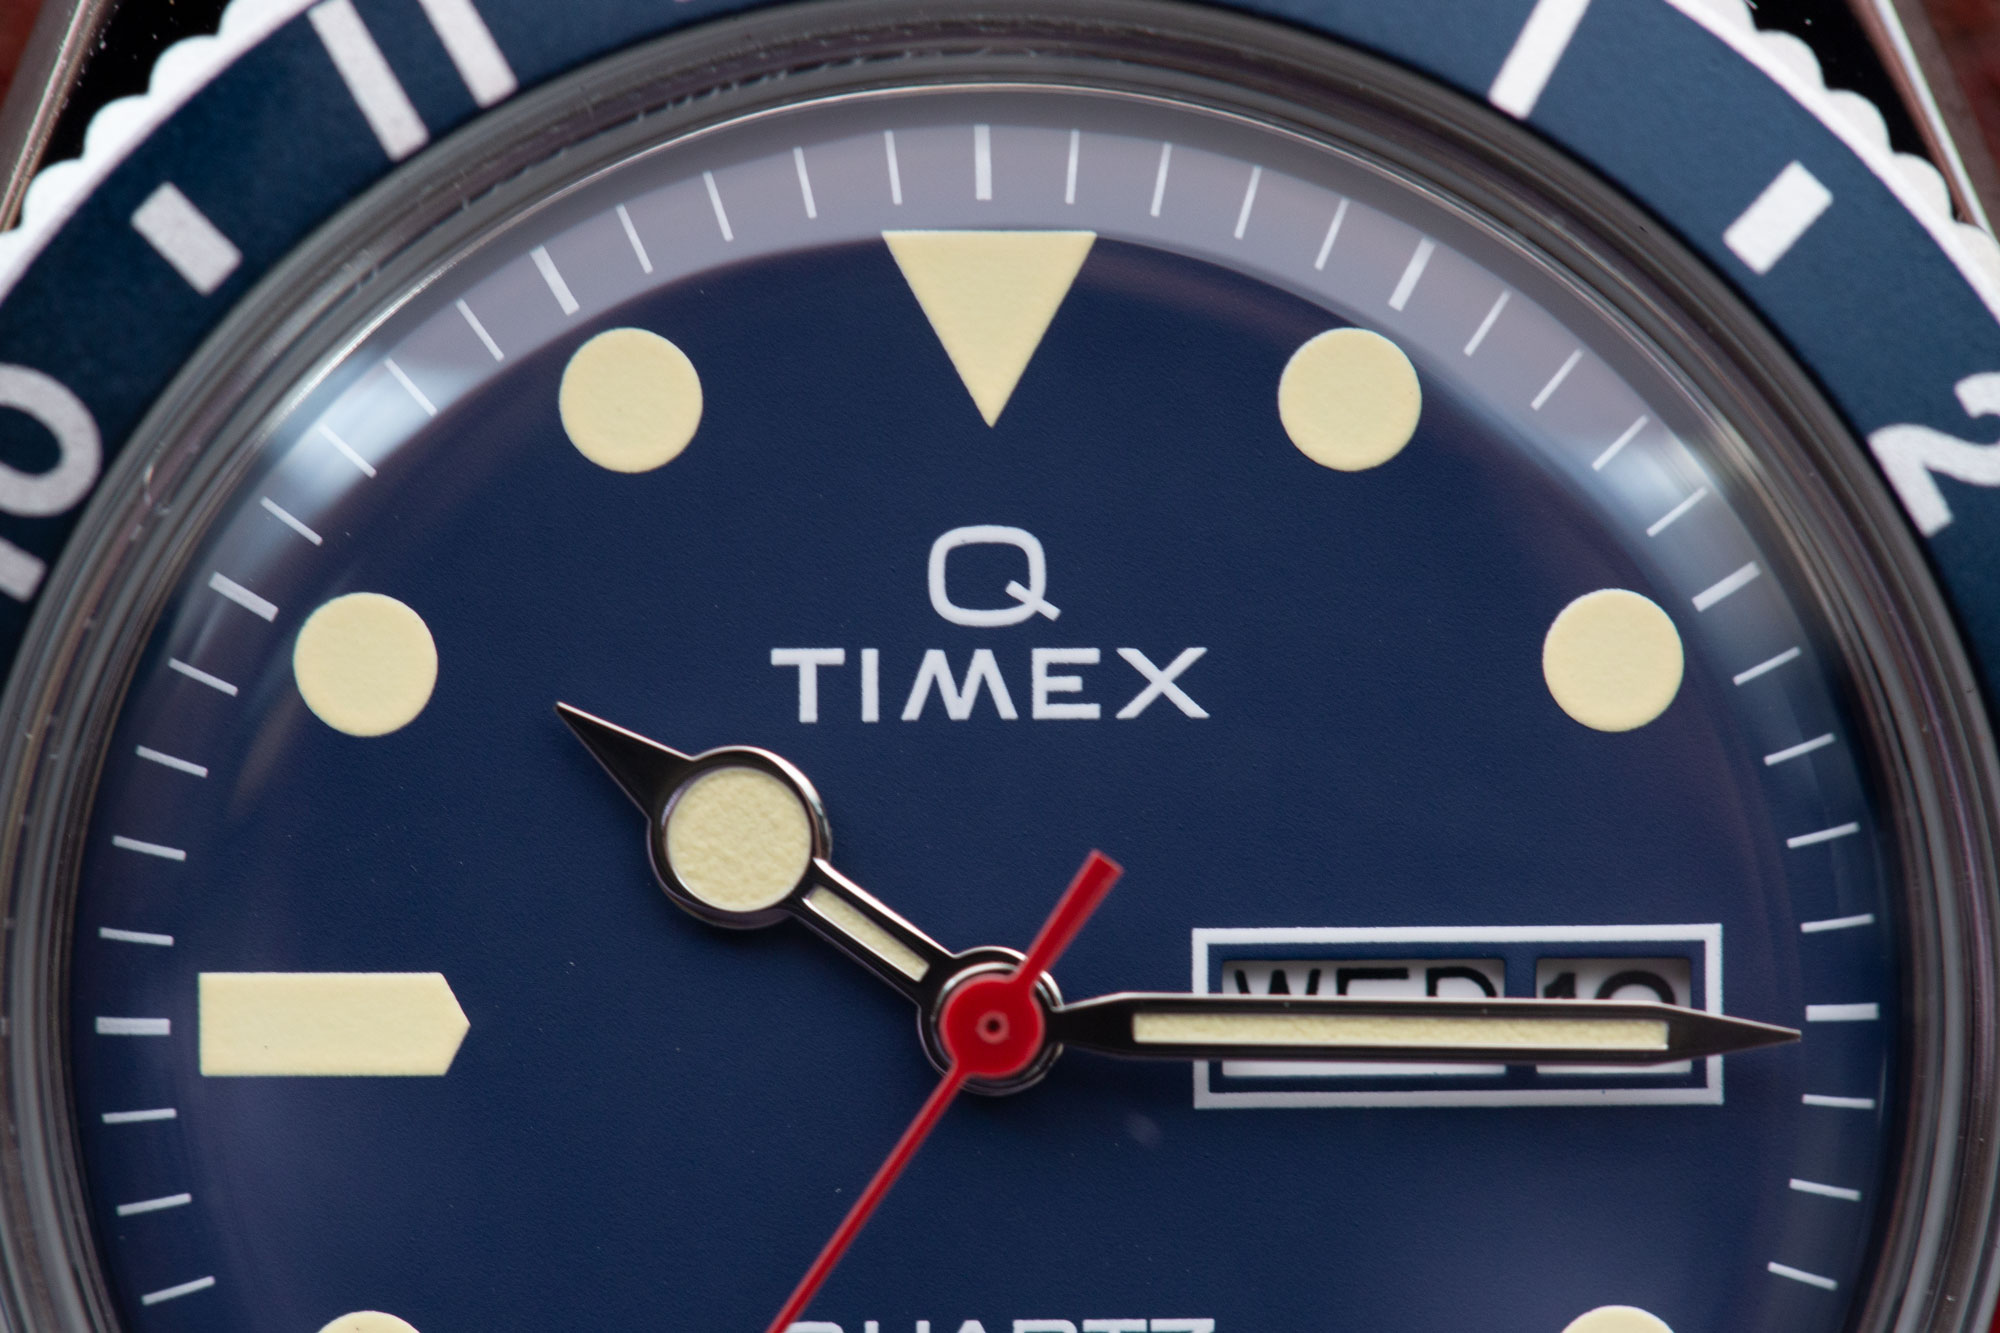 timex q hodinkee